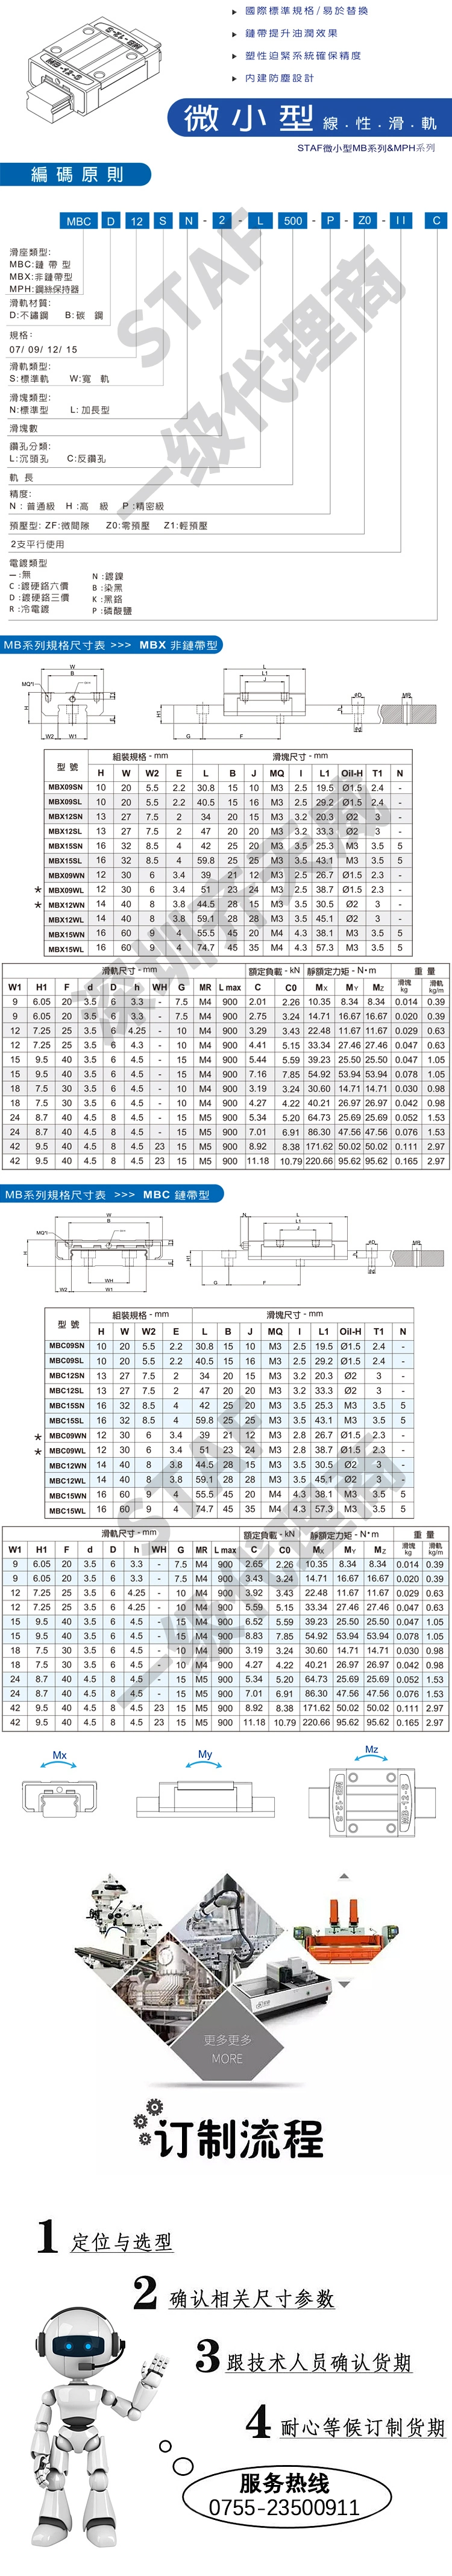 Electronic Equipment Staf Guide Rail Bgxh15fs